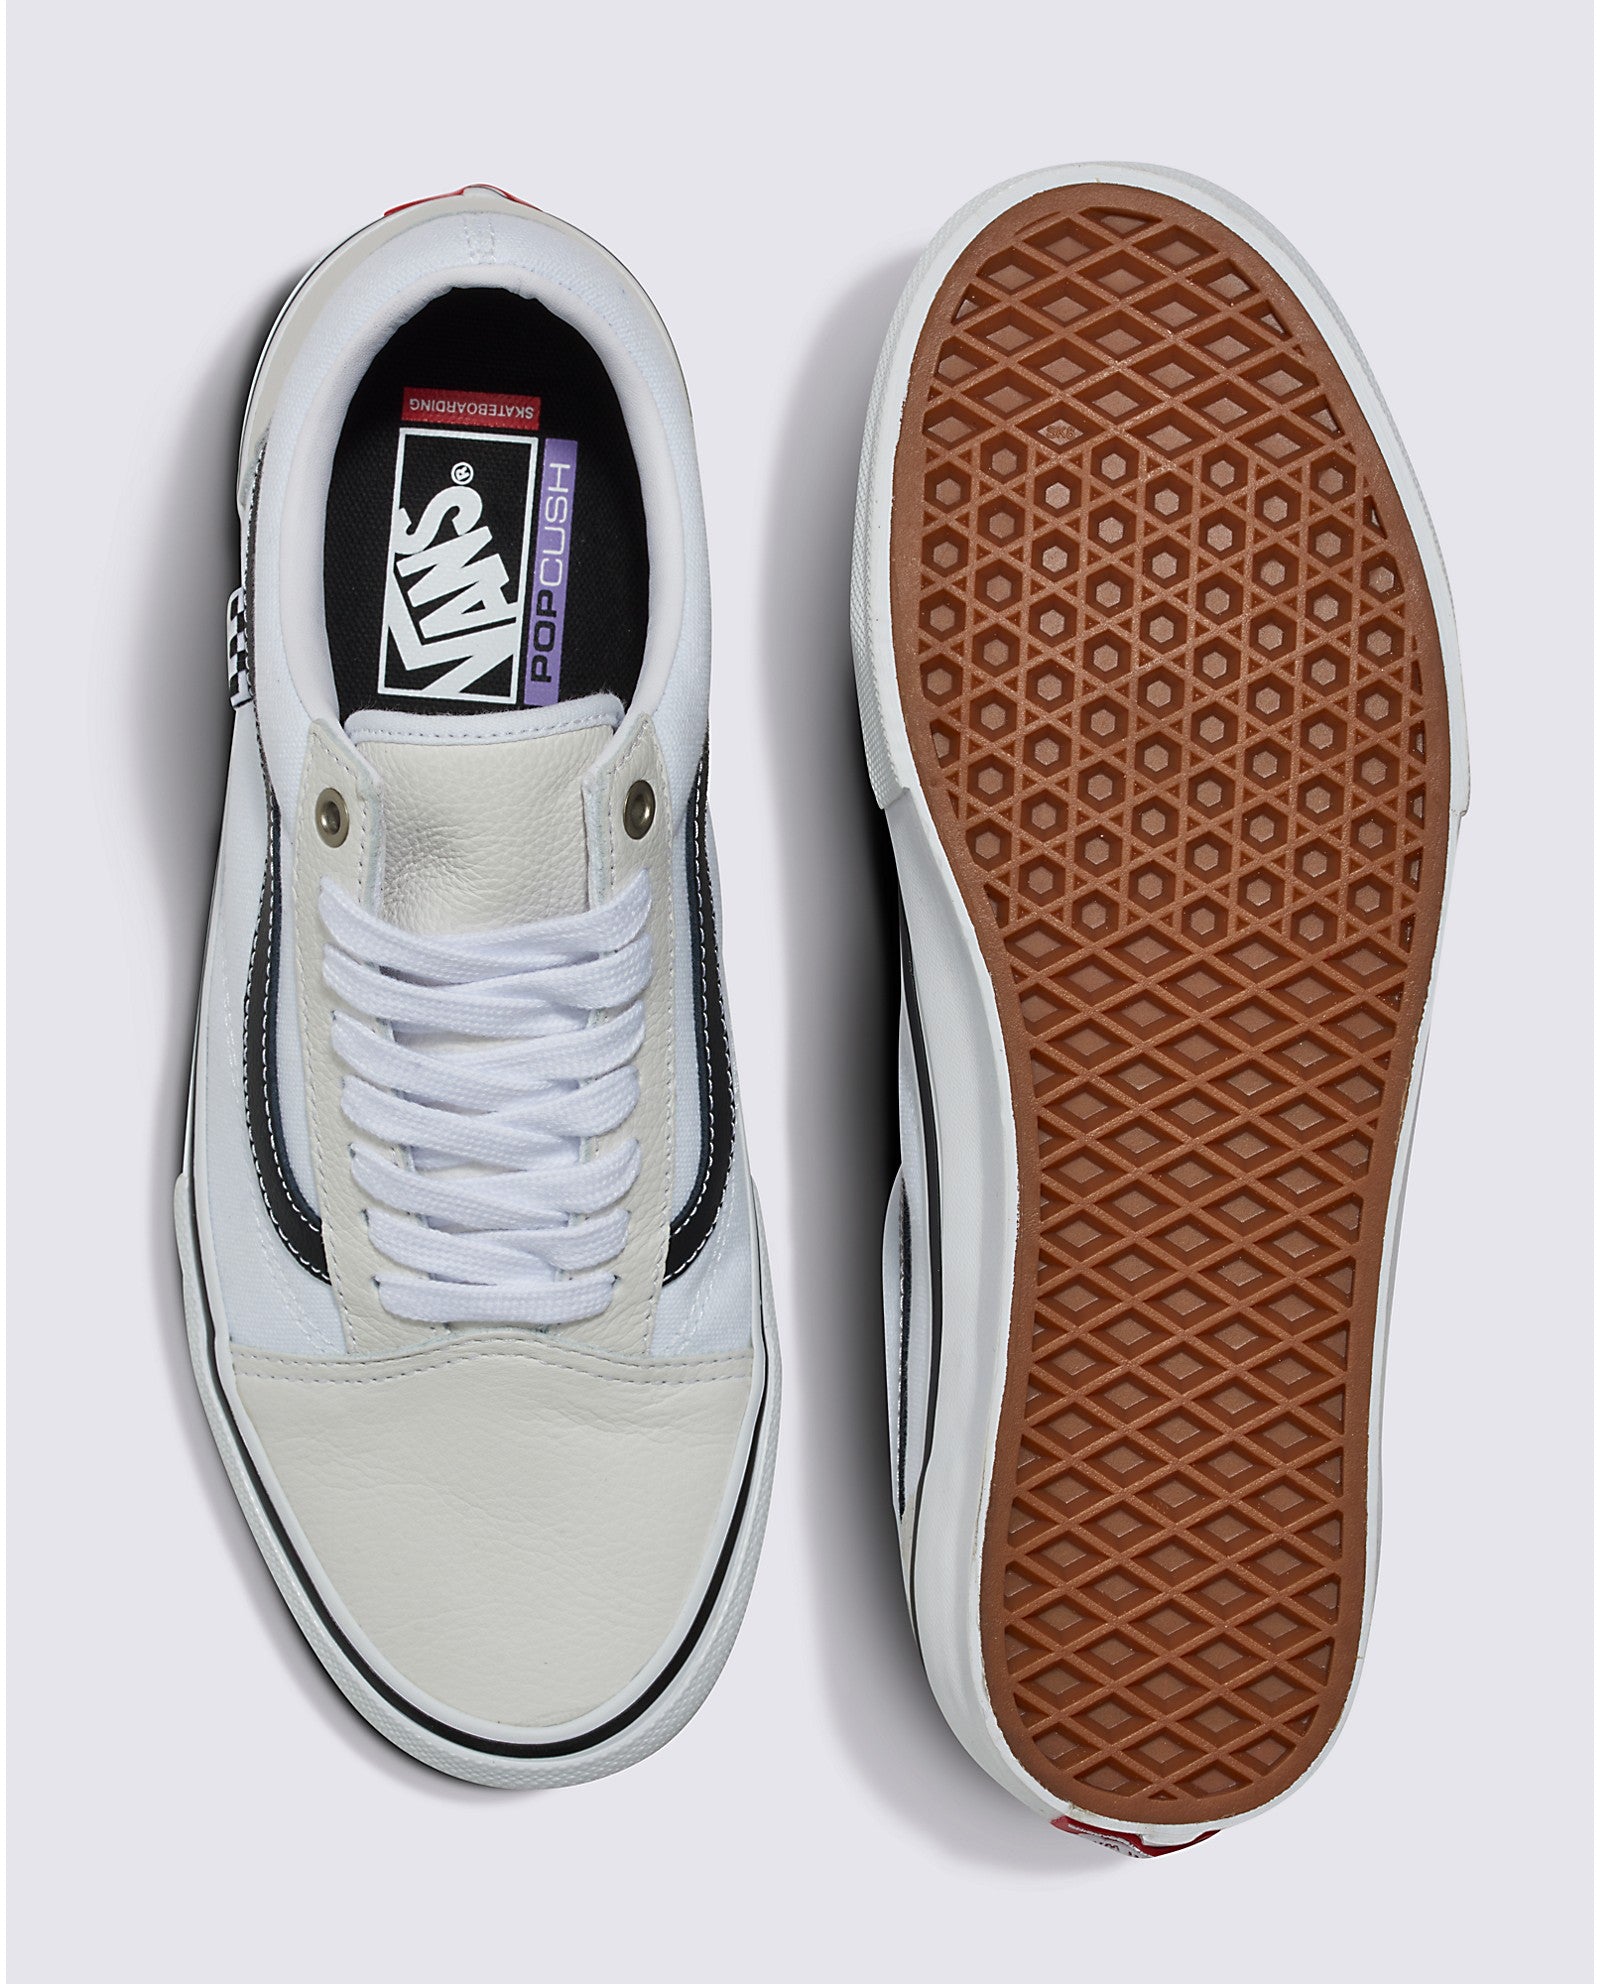 White/White Leather Skate Old Skool Vans Shoes Top/Bottom